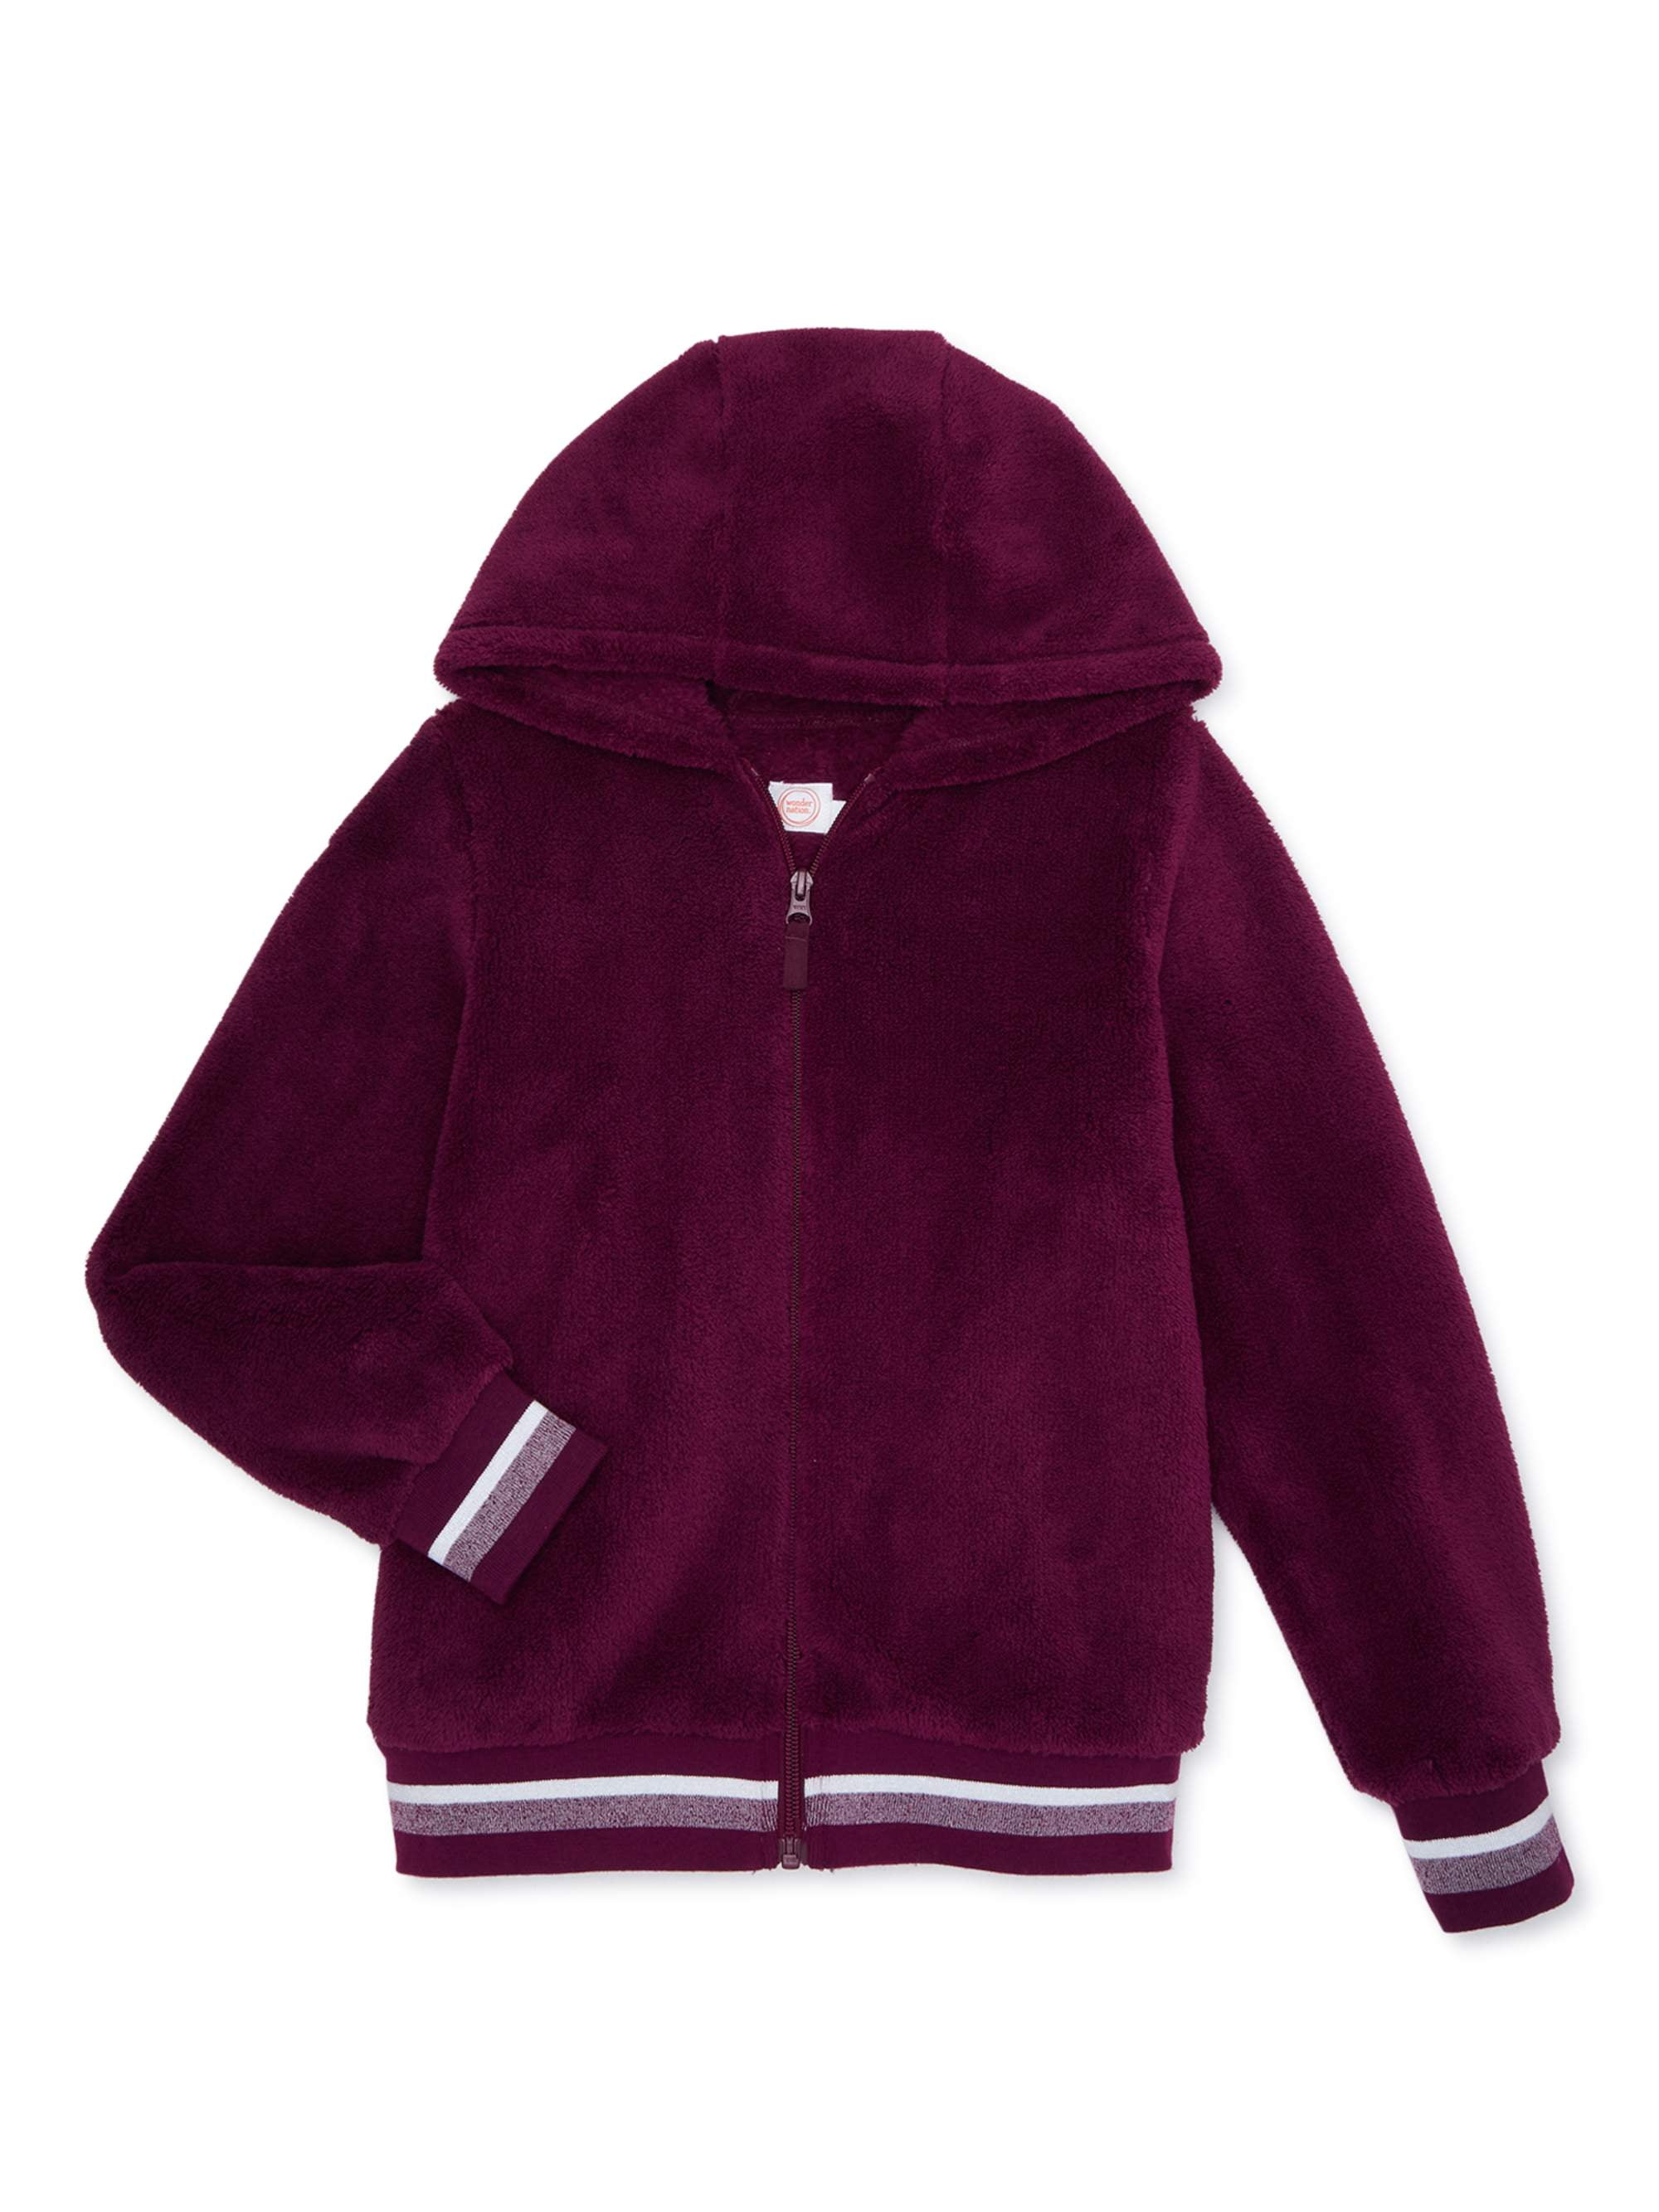 Girls Plush Full-Zip Fleece Jacket with Hood